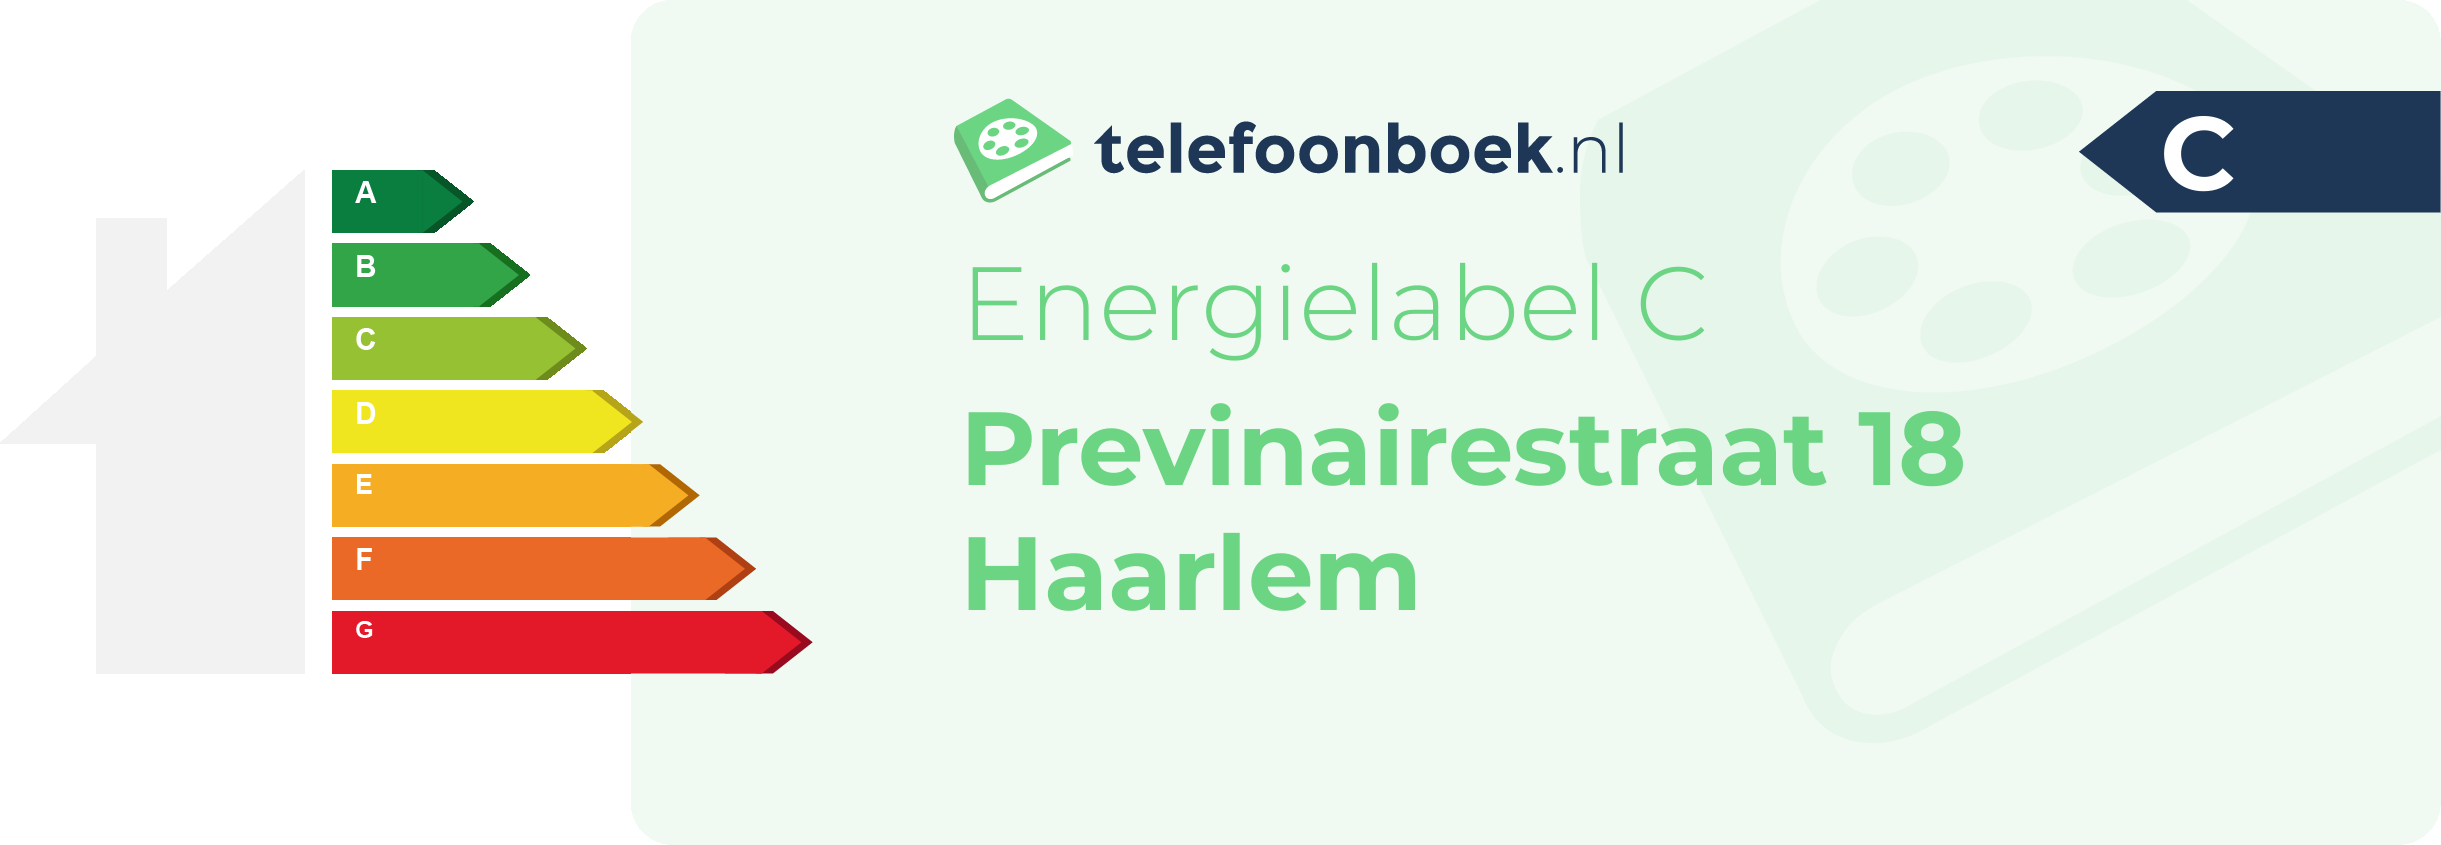 Energielabel Previnairestraat 18 Haarlem